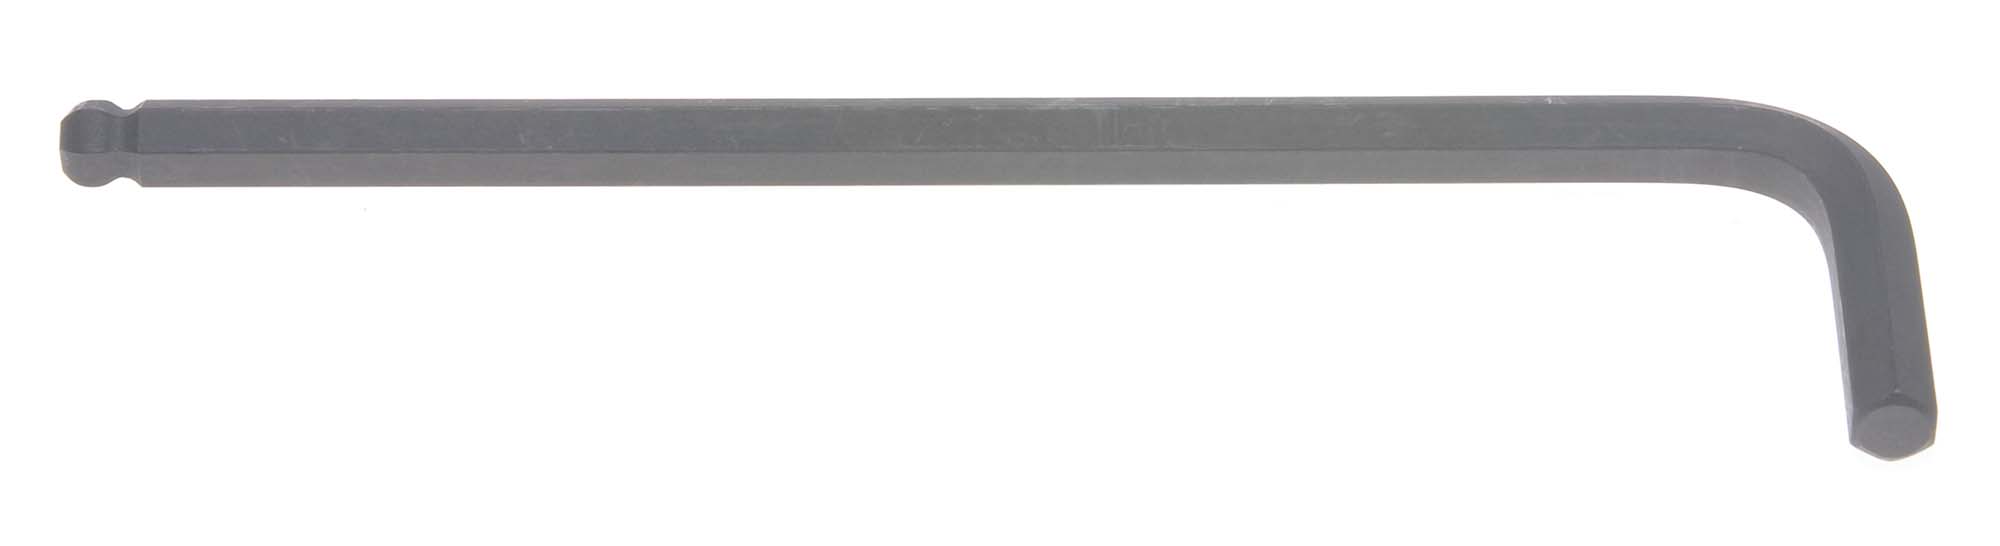 4mm Bondhus Balldriver L-Wrench Hex Key